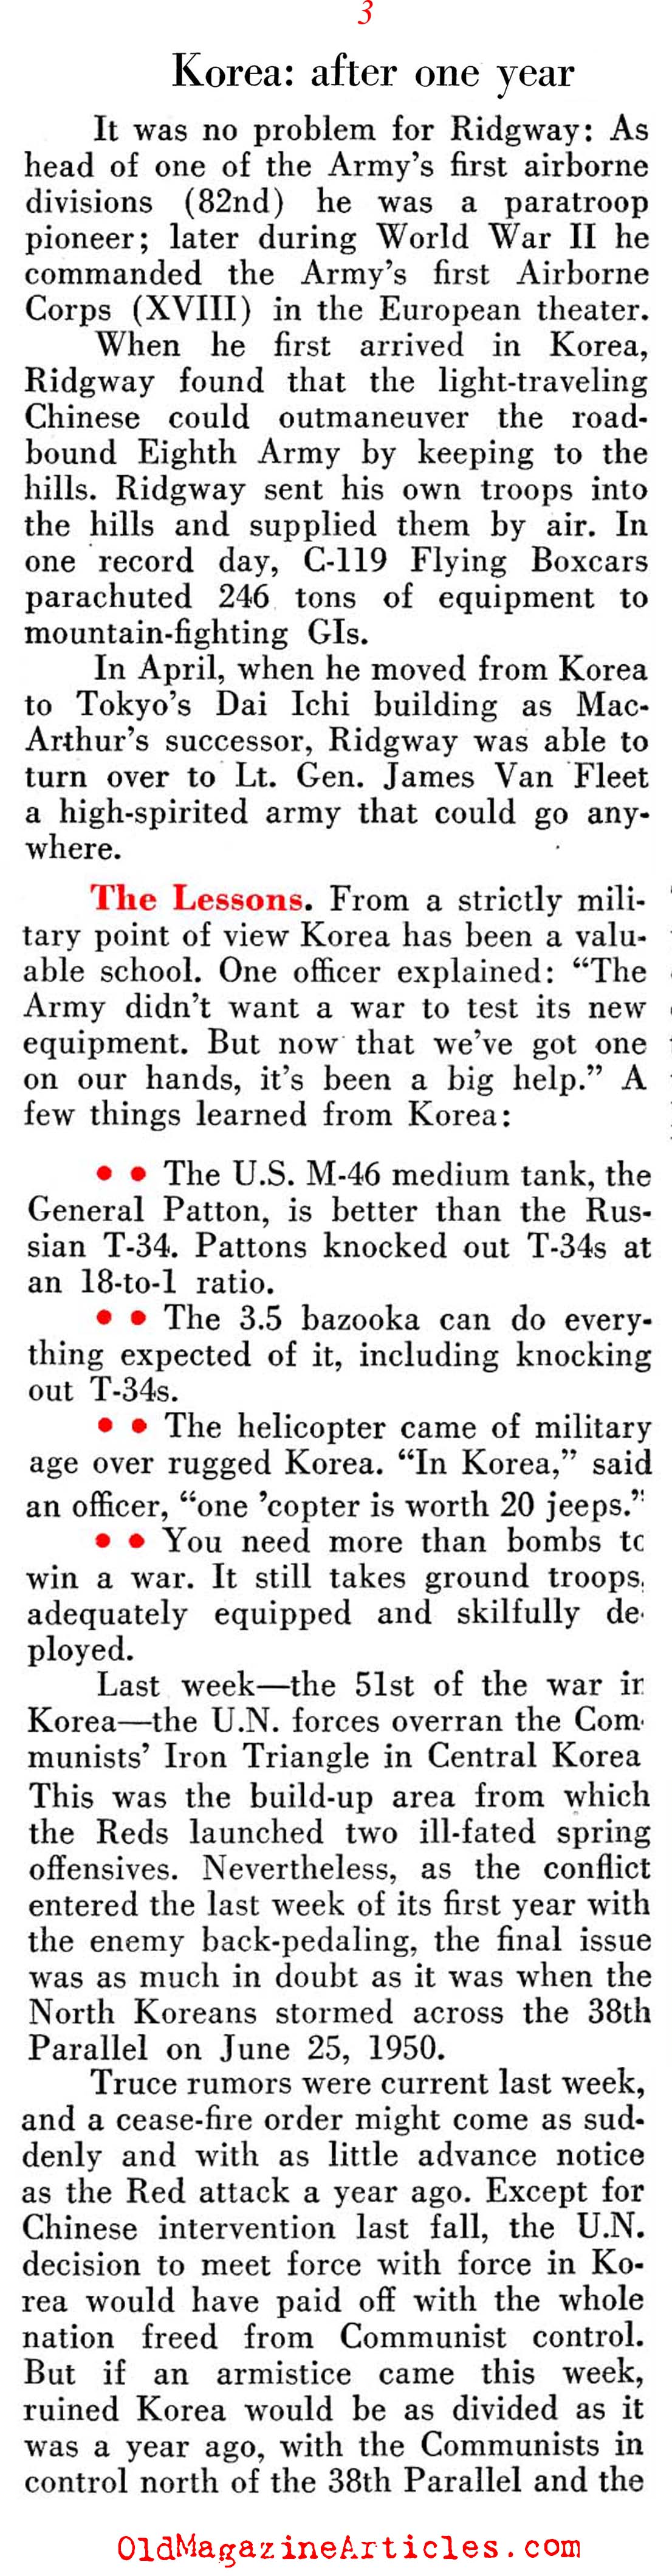 The First 365 Days of the Korean War (Pathfinder Magazine, 1951)